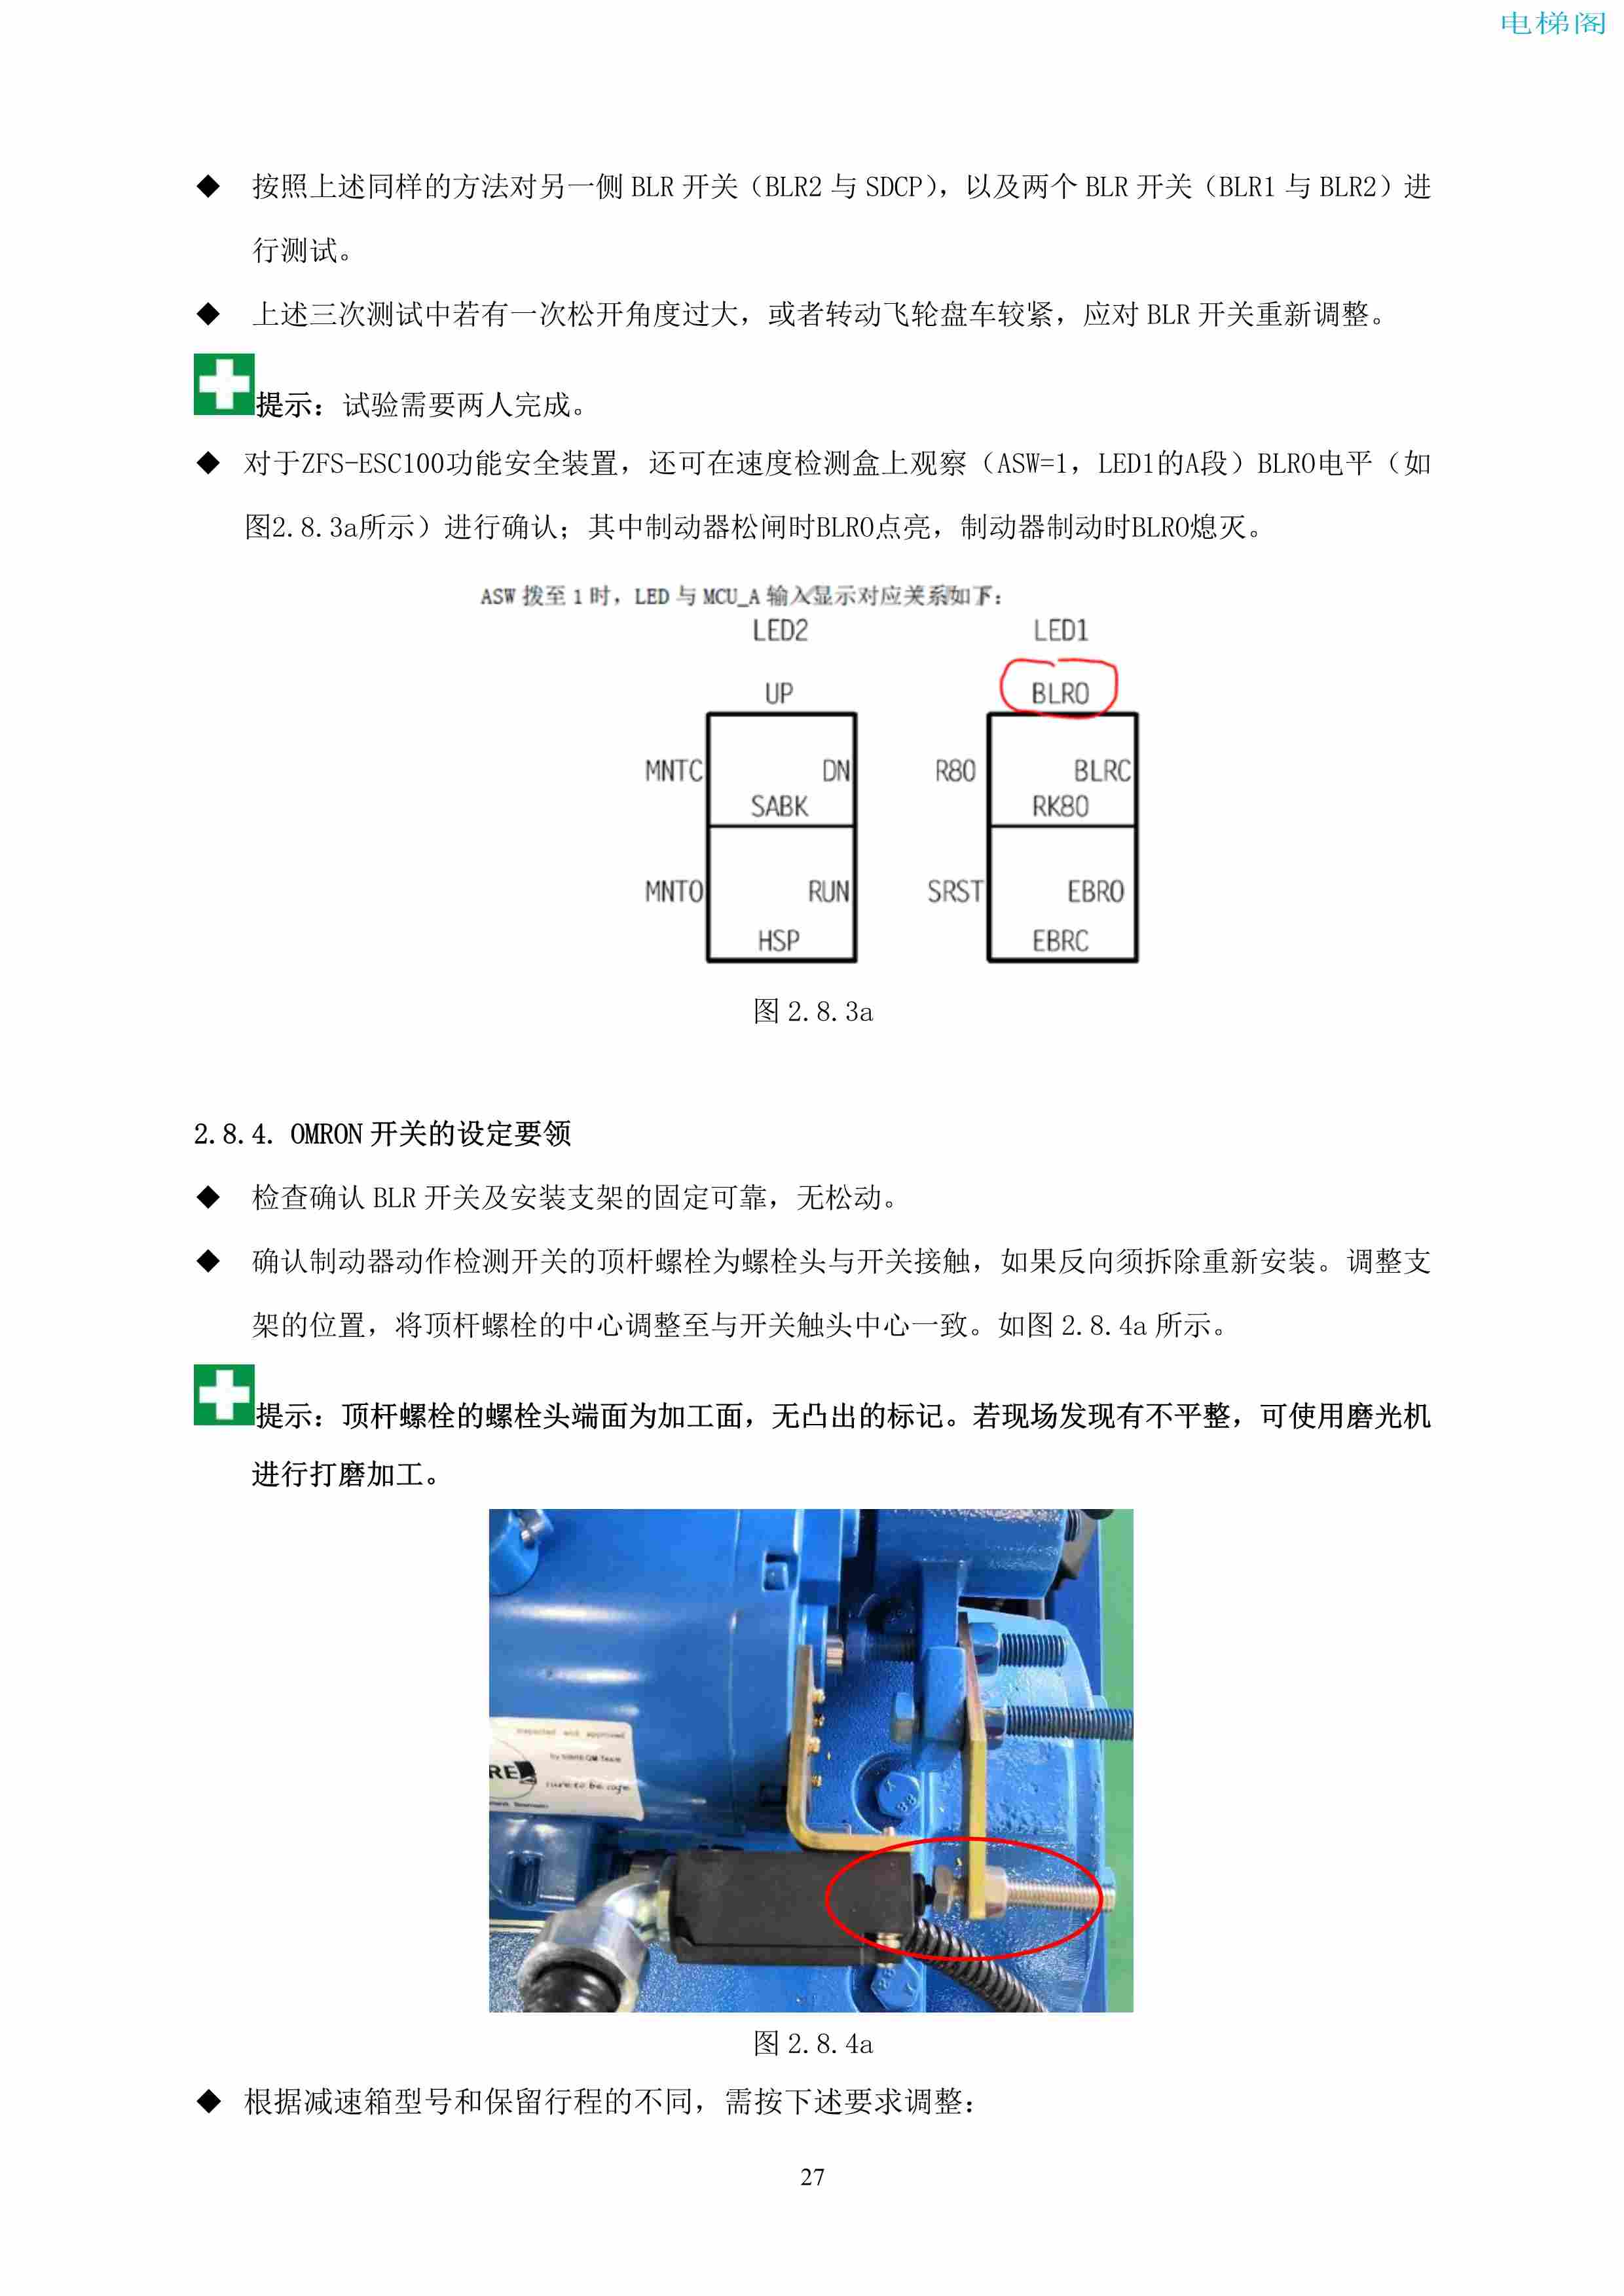 上海三菱电梯有限公司自动扶梯制动器维护作业要领汇编_28.jpg